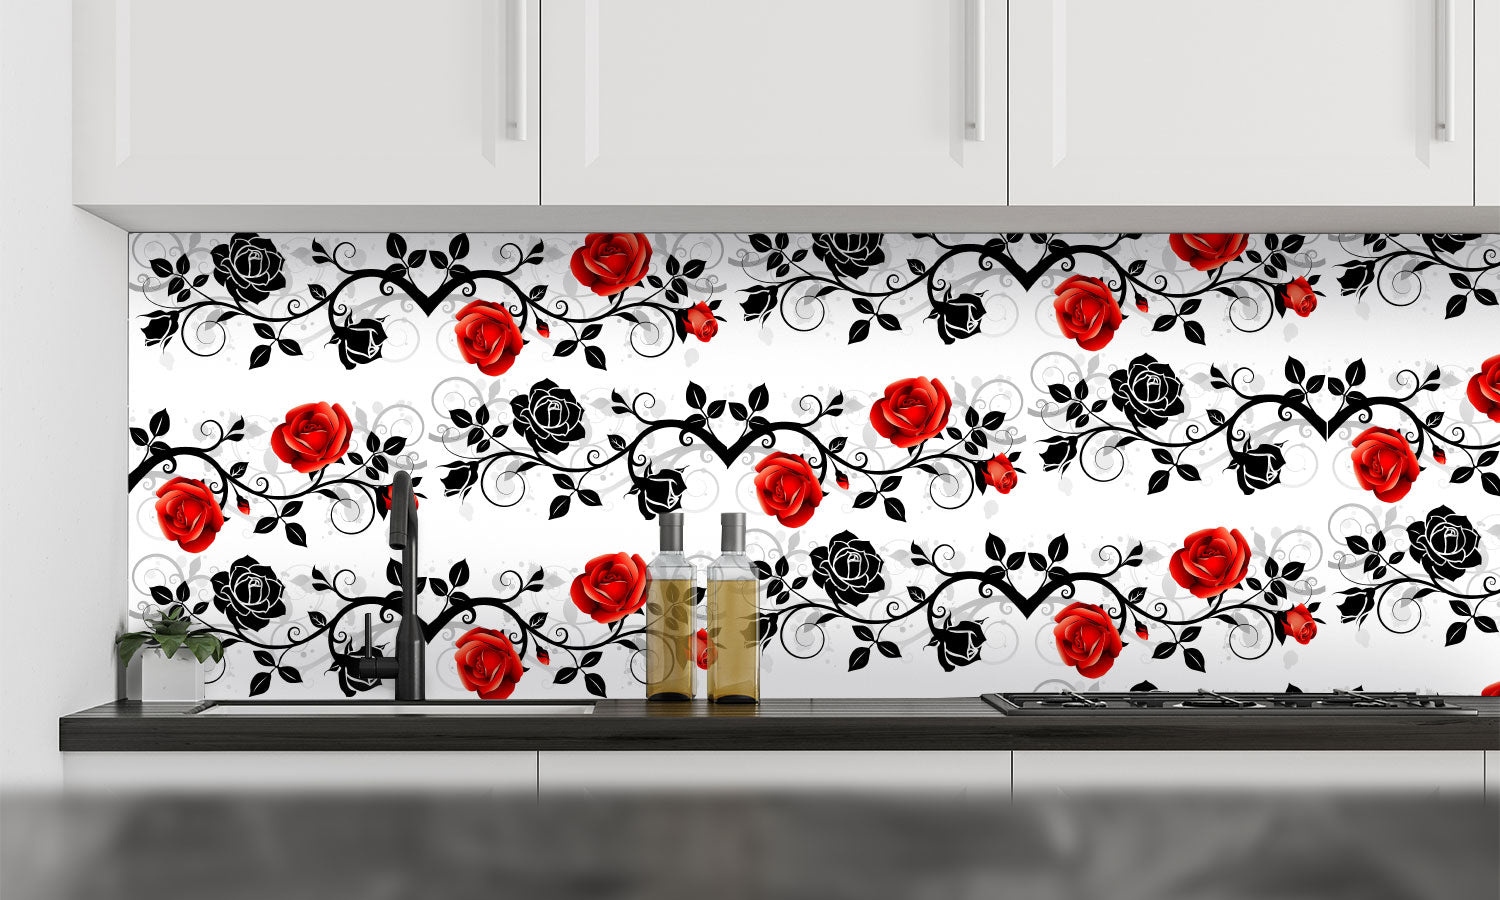 Kuhinjski paneli Ornament with roses - Pleksi steklo - s tiskom za kuhinjo, Stenske obloge PKU0362